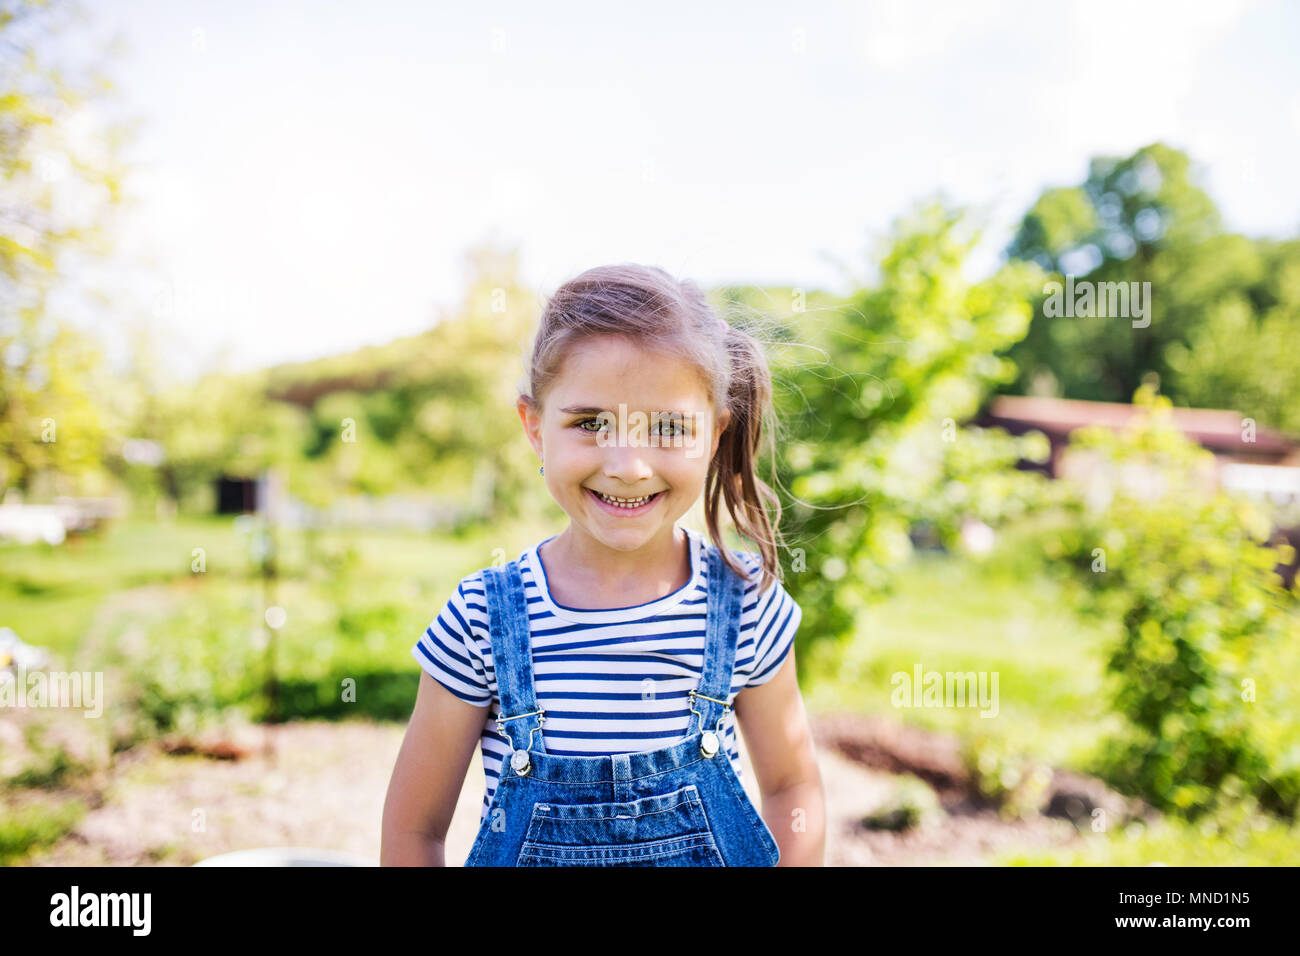 Ein Porträt von einem kleinen Mädchen in den Garten im Frühling Natur. Stockfoto